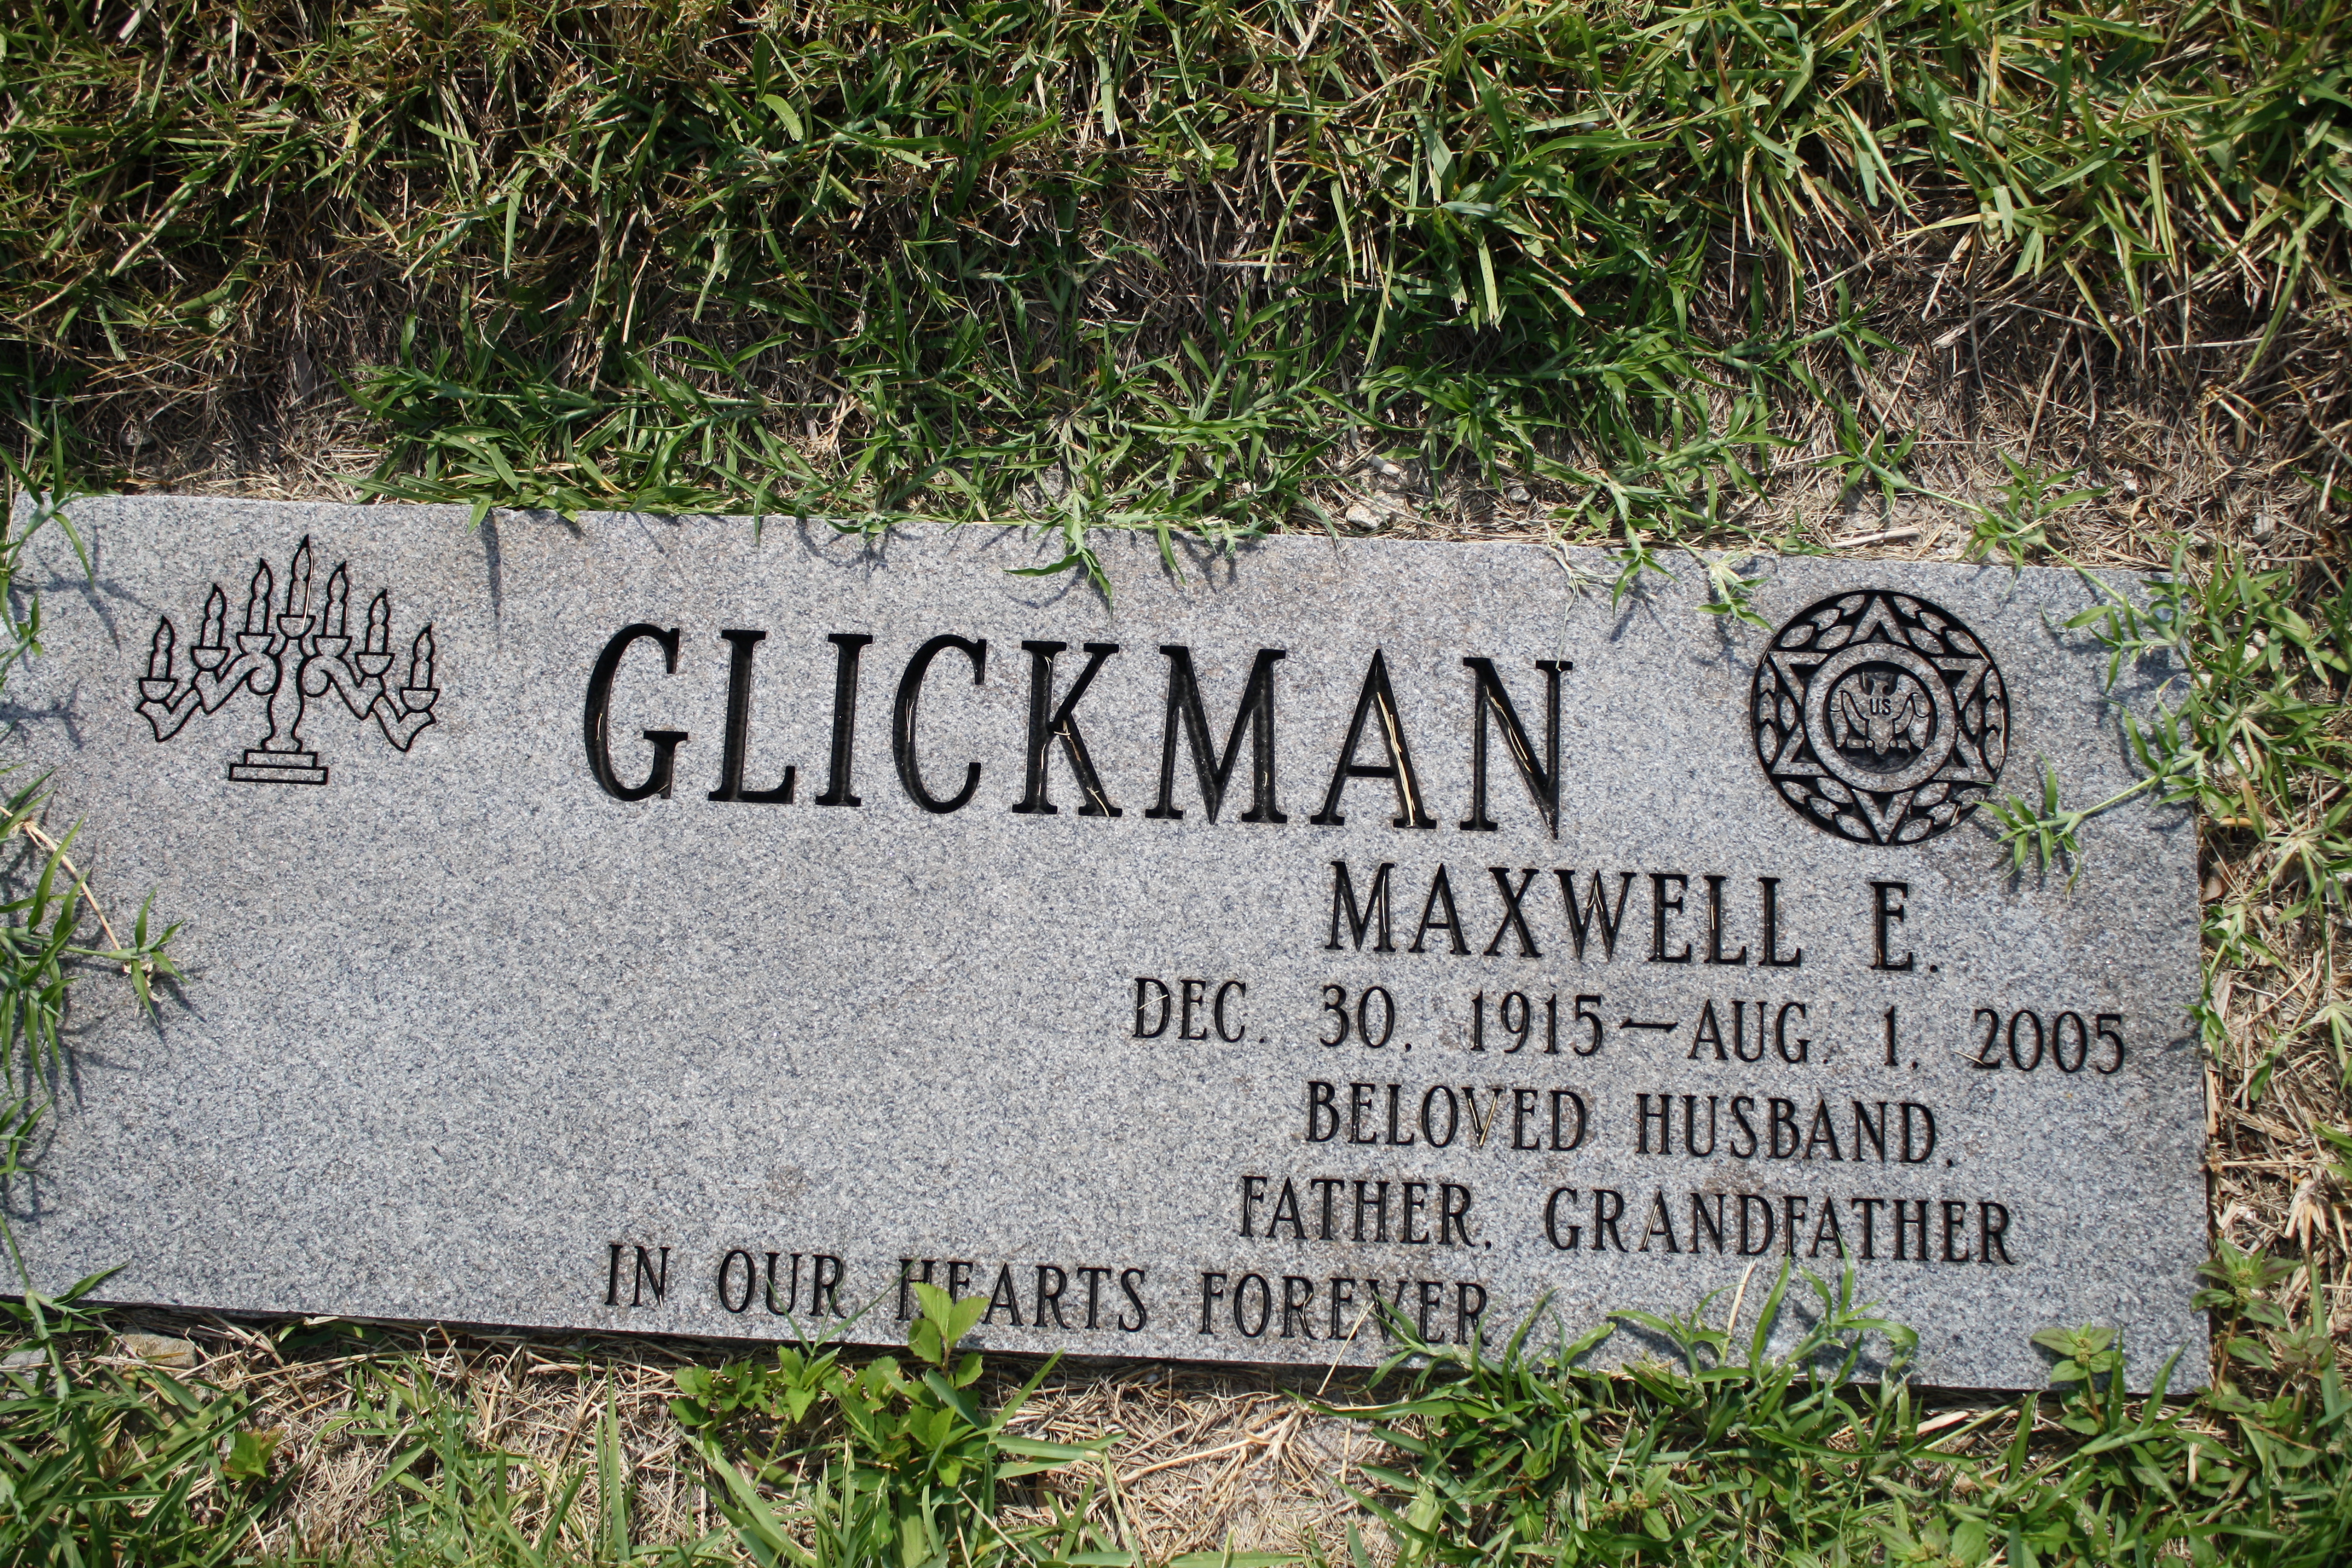 Maxwell E Glickman